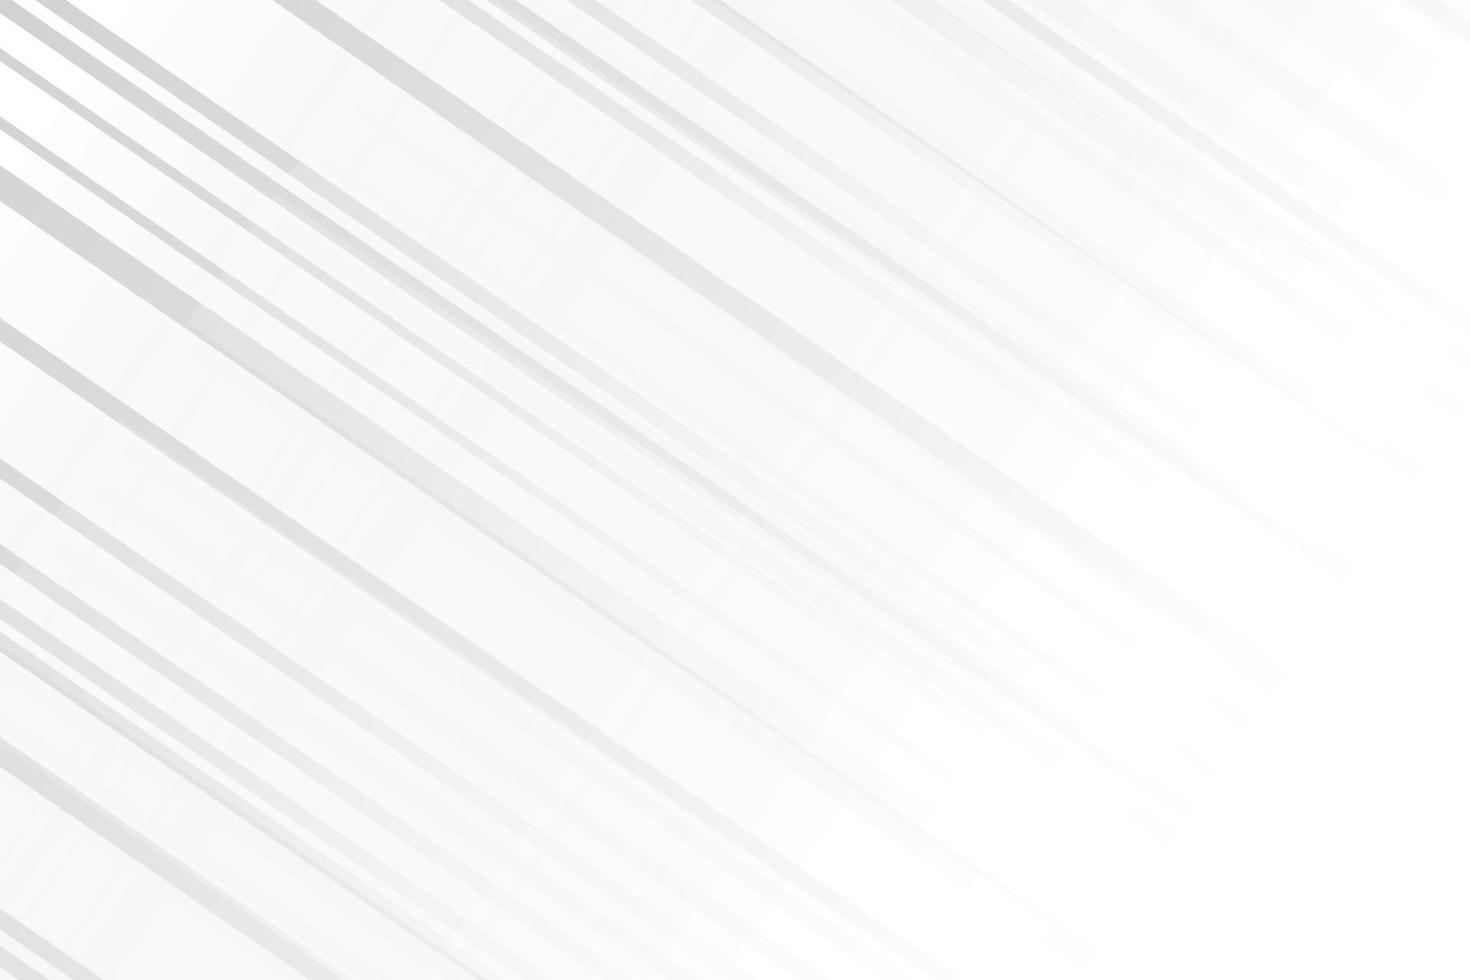 linhas de movimento diagonal minimalista em fundo branco vetor